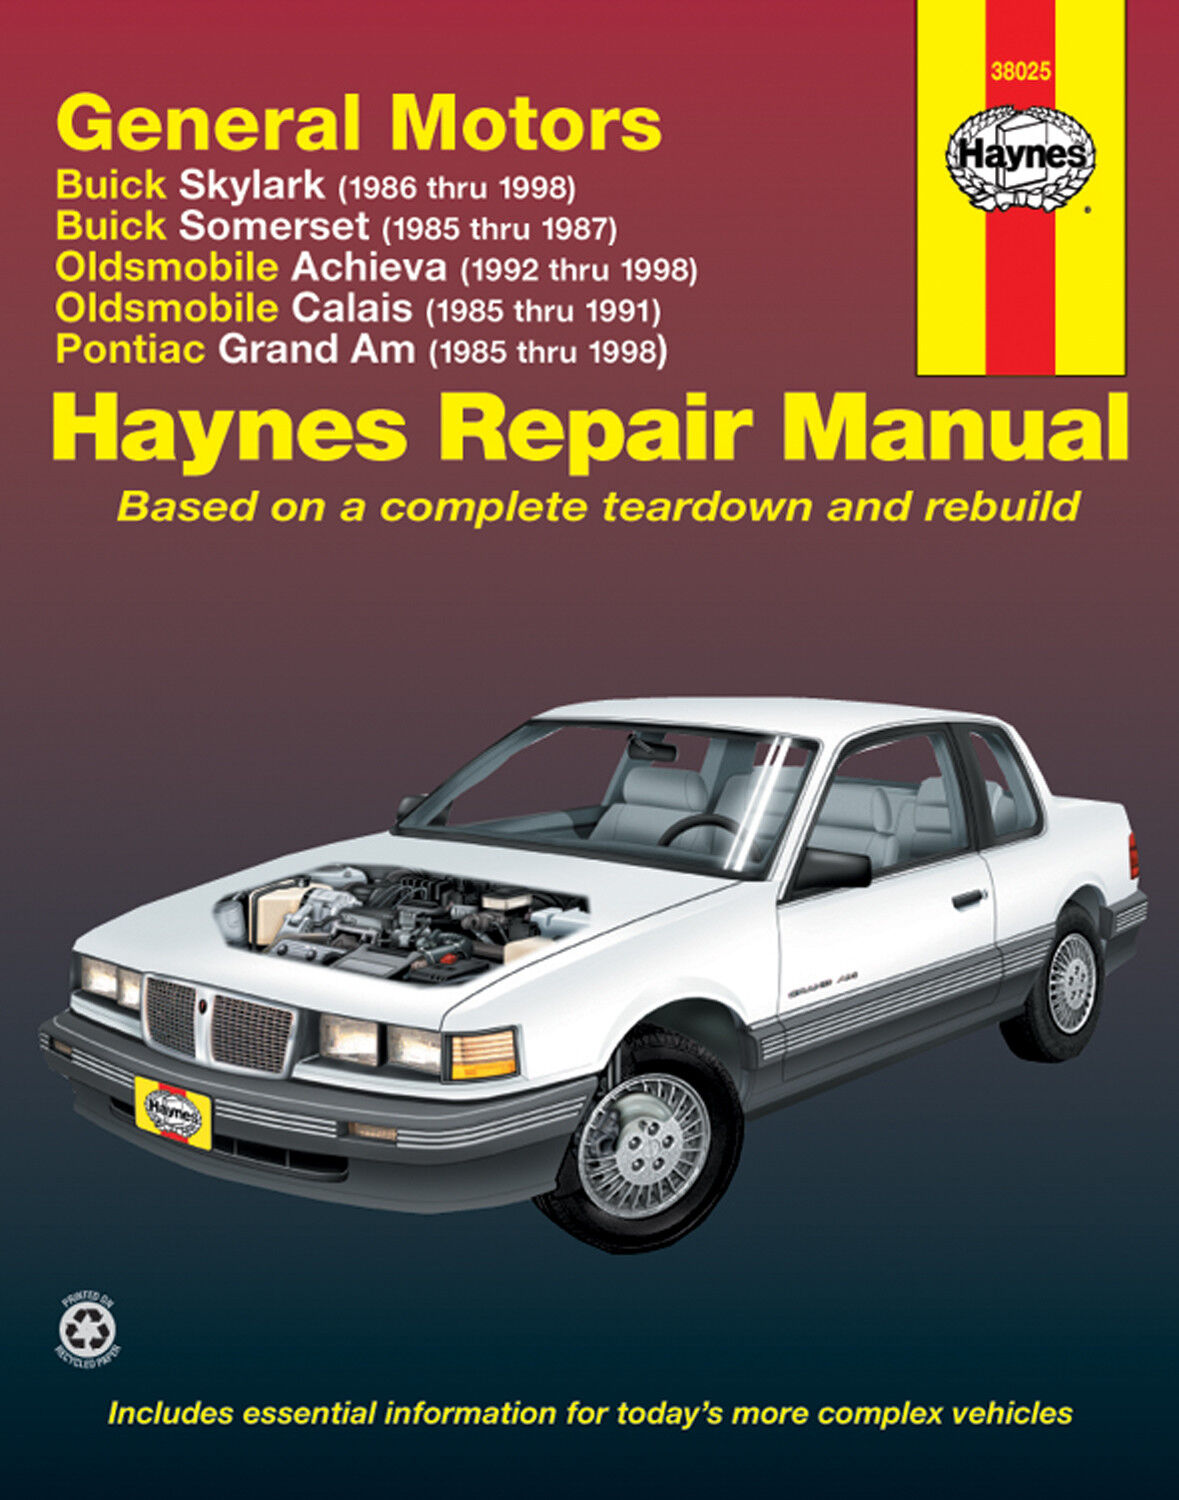 Haynes Repair Manual 38025 General Motors Buick Oldsmobile Pontiac